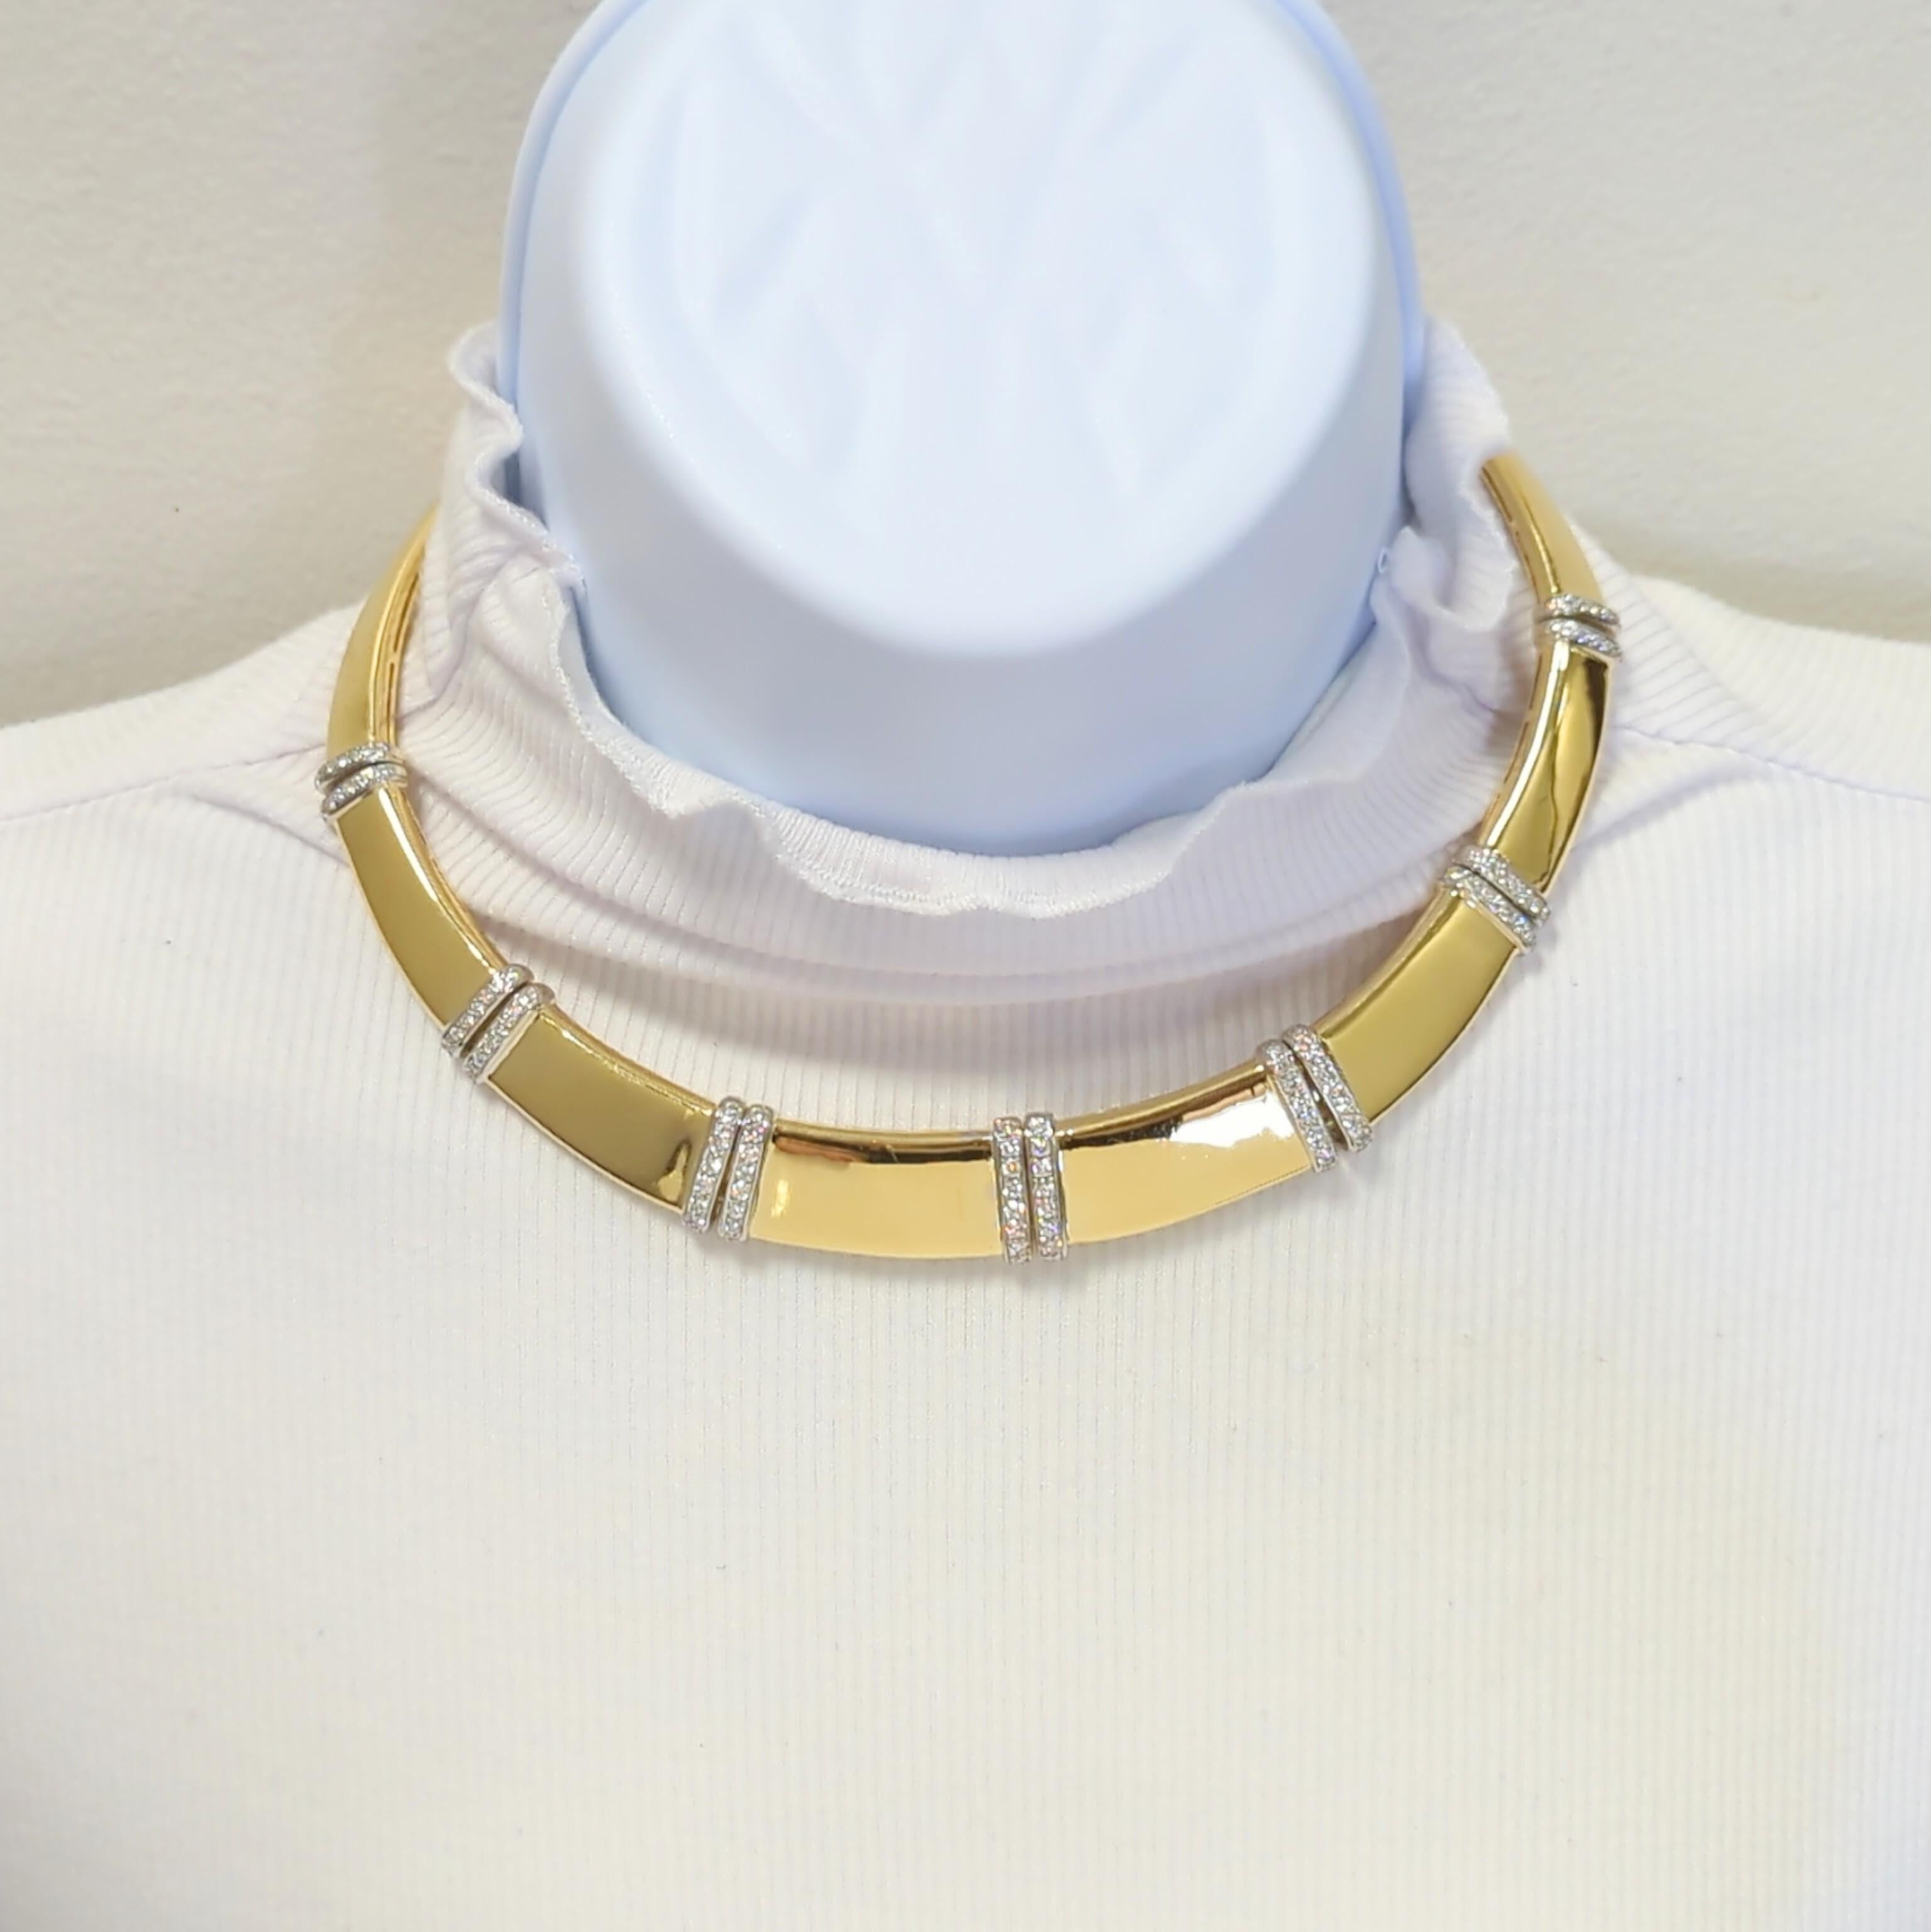 Magnifique collier en or avec 2,54 ct. de diamants ronds de bonne qualité, blancs et brillants.  Fabriqué à la main en or blanc et jaune 18 carats.  Convient à un cou de 15